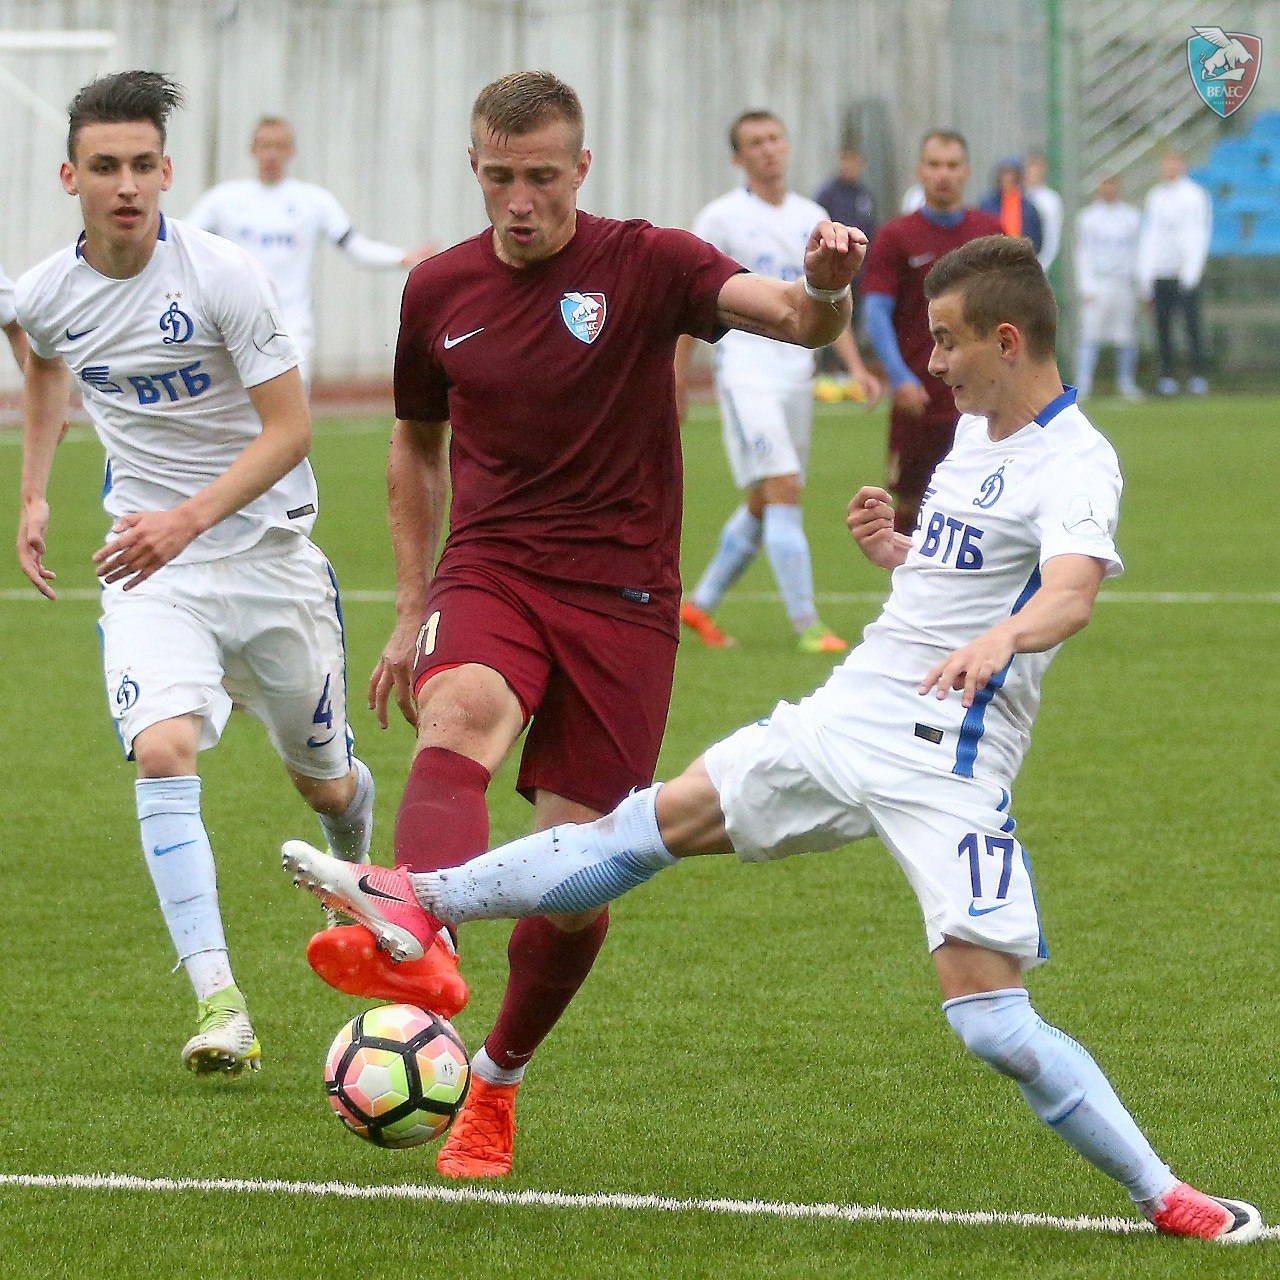 «Велес» одержал победу в контрольном матче с молодежной командной «Динамо» - 3:2